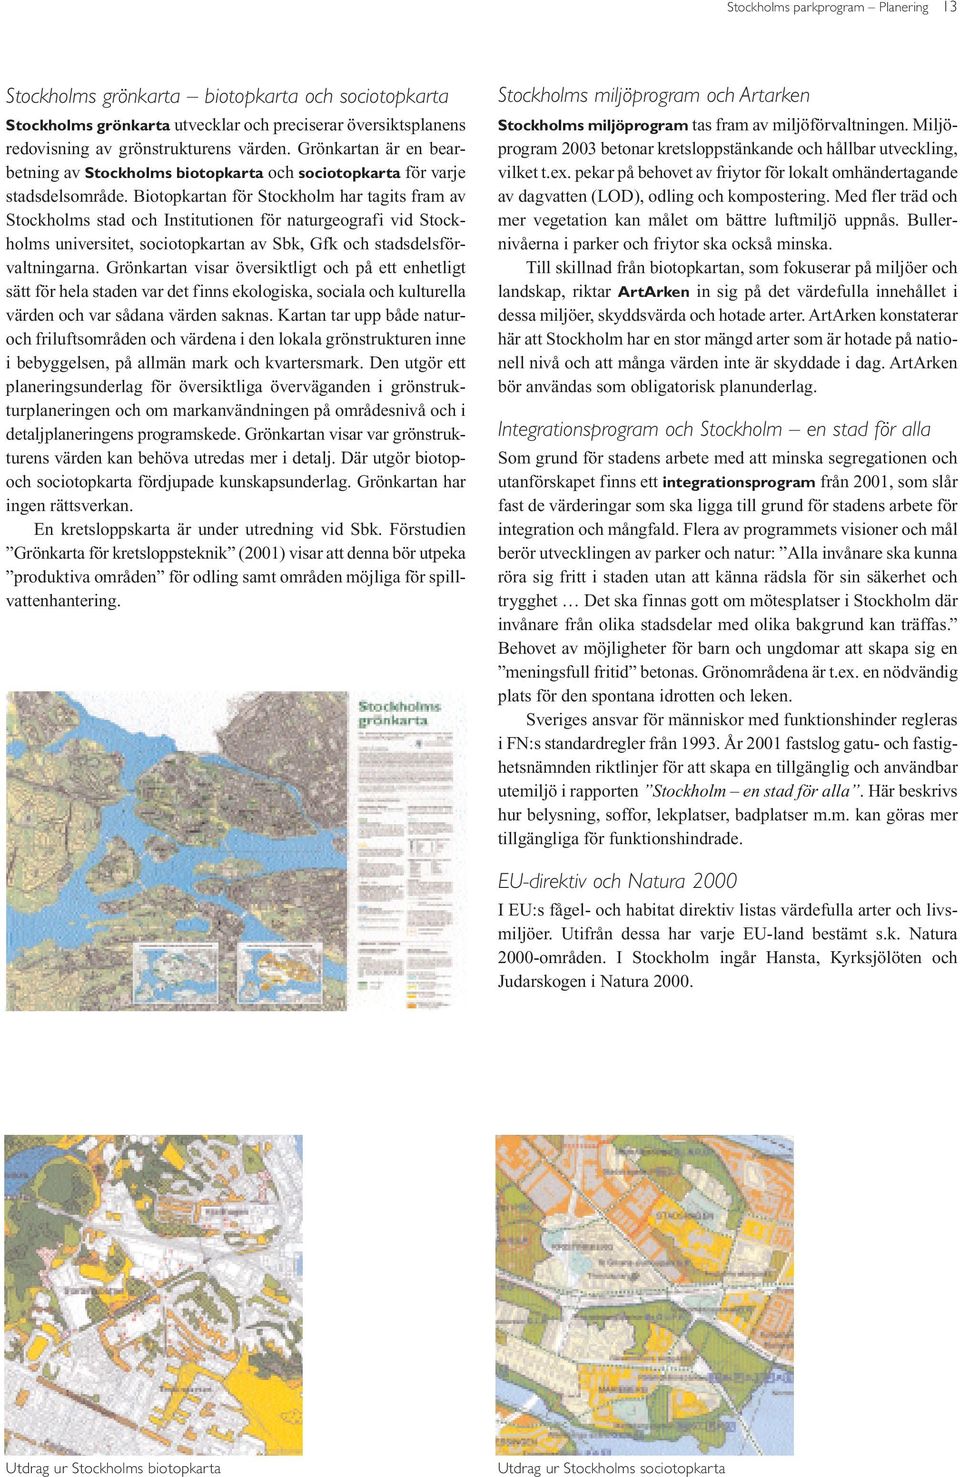 Biotopkartan för Stockholm har tagits fram av Stockholms stad och Institutionen för naturgeografi vid Stockholms universitet, sociotopkartan av Sbk, Gfk och stadsdelsförvaltningarna.